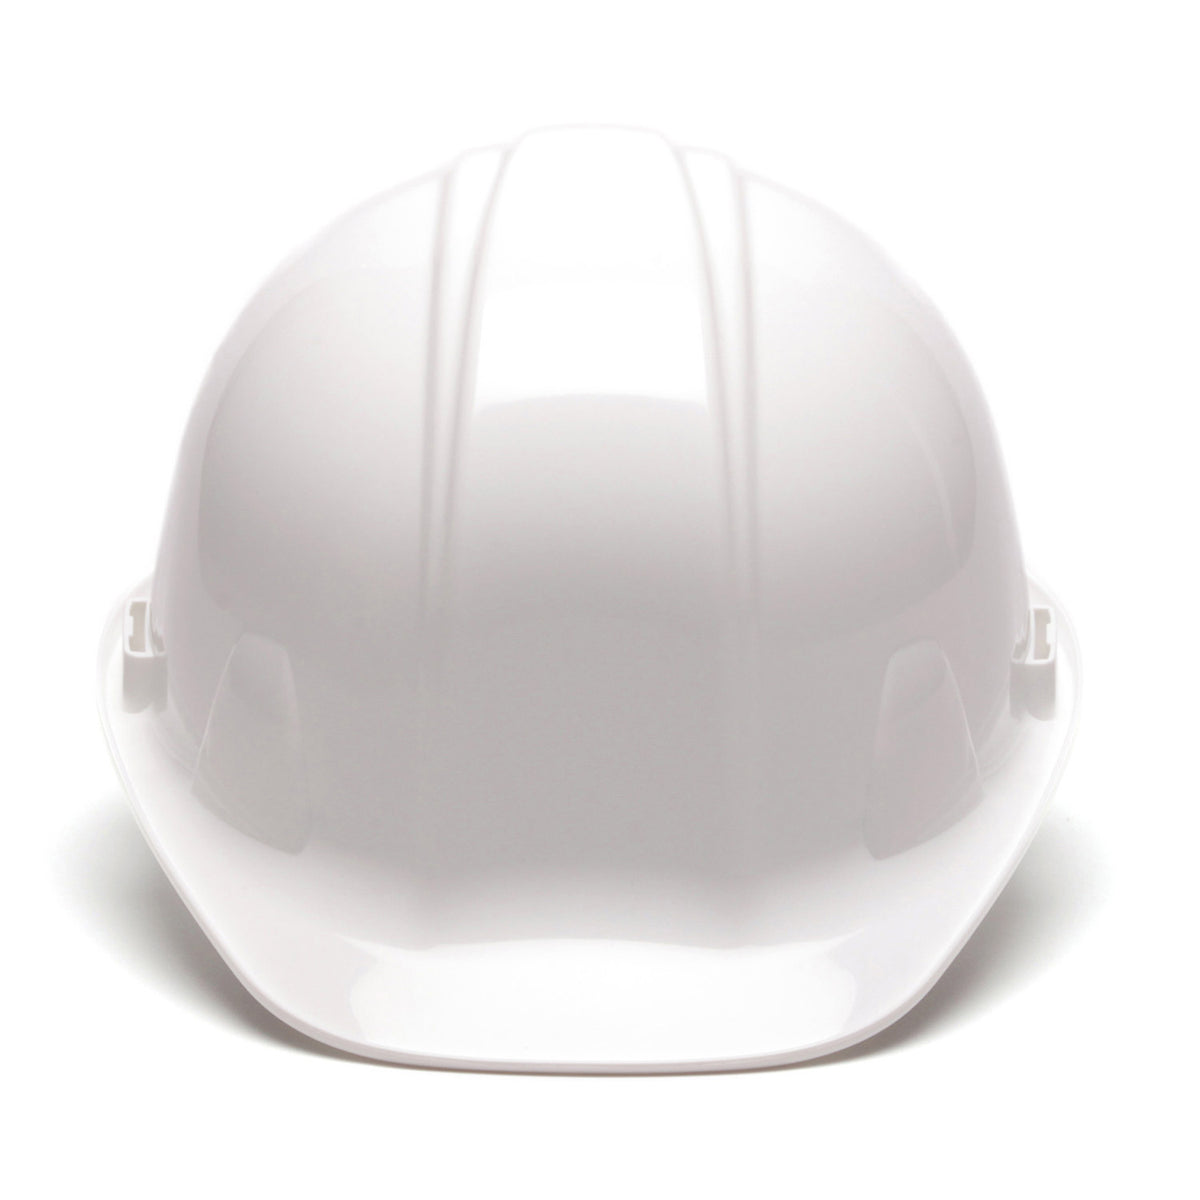 Pyramex SL Series Hard Hat_White - Work World - Workwear, Work Boots, Safety Gear